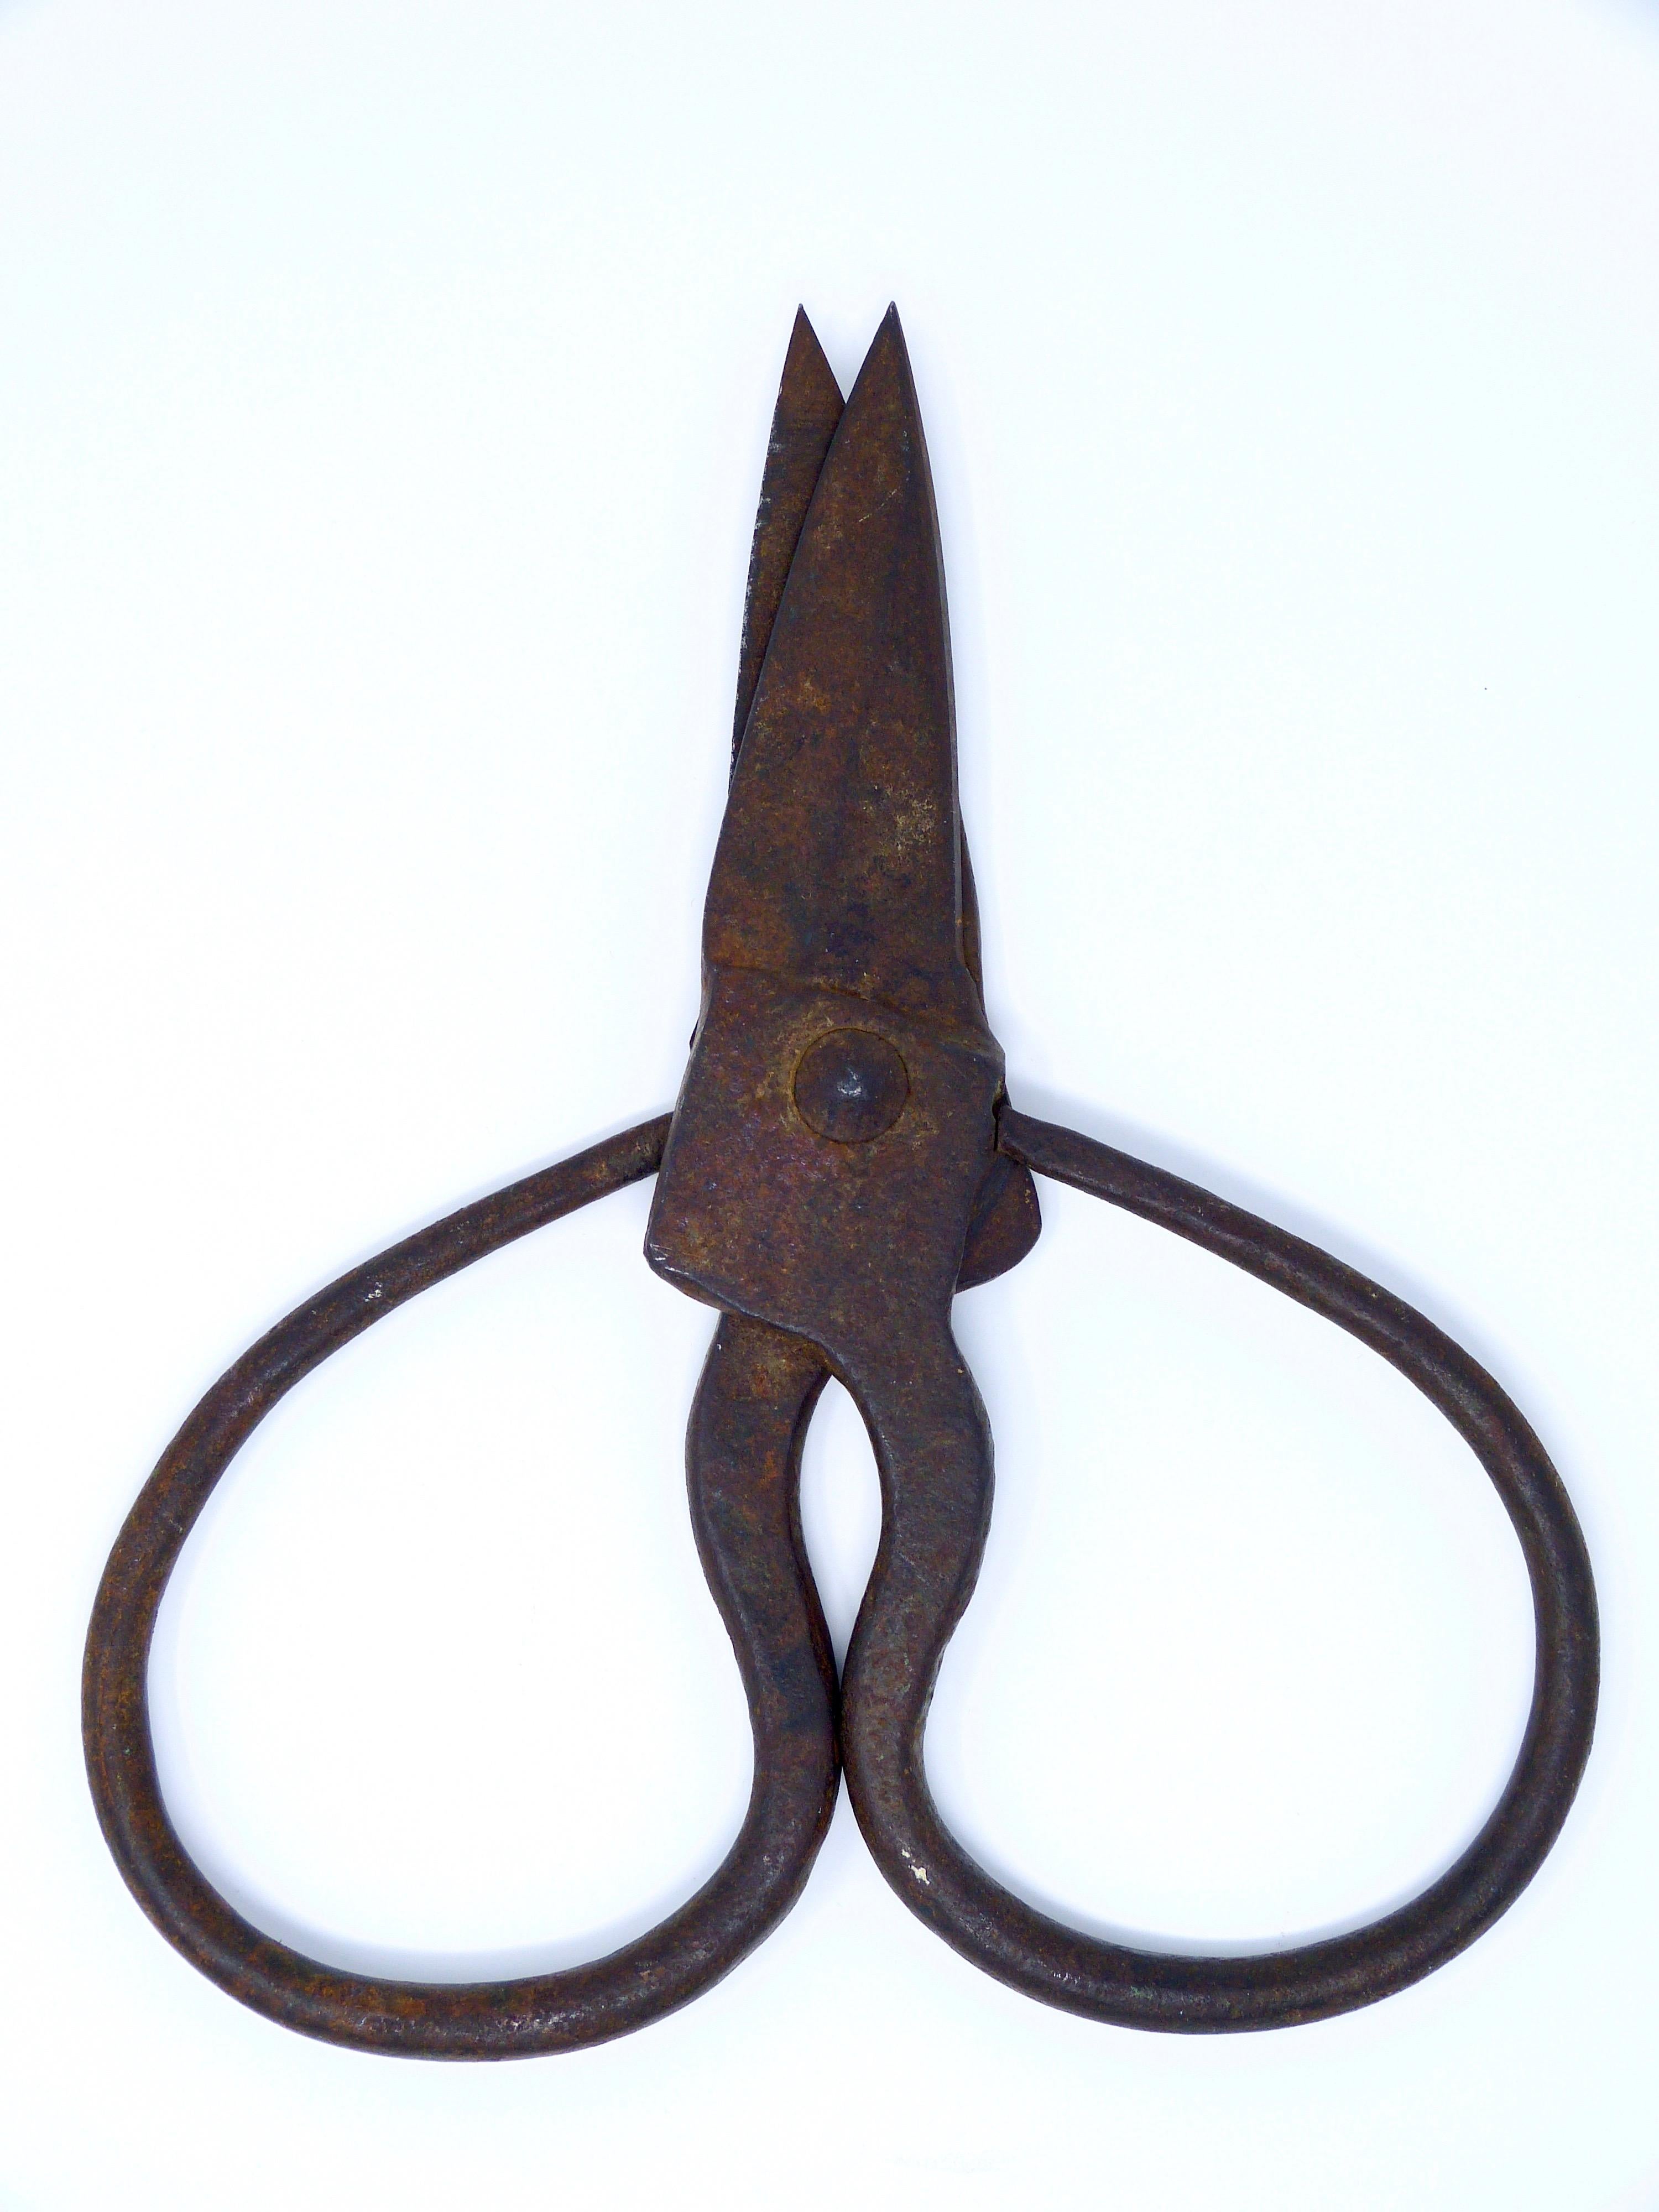 19th century scissors